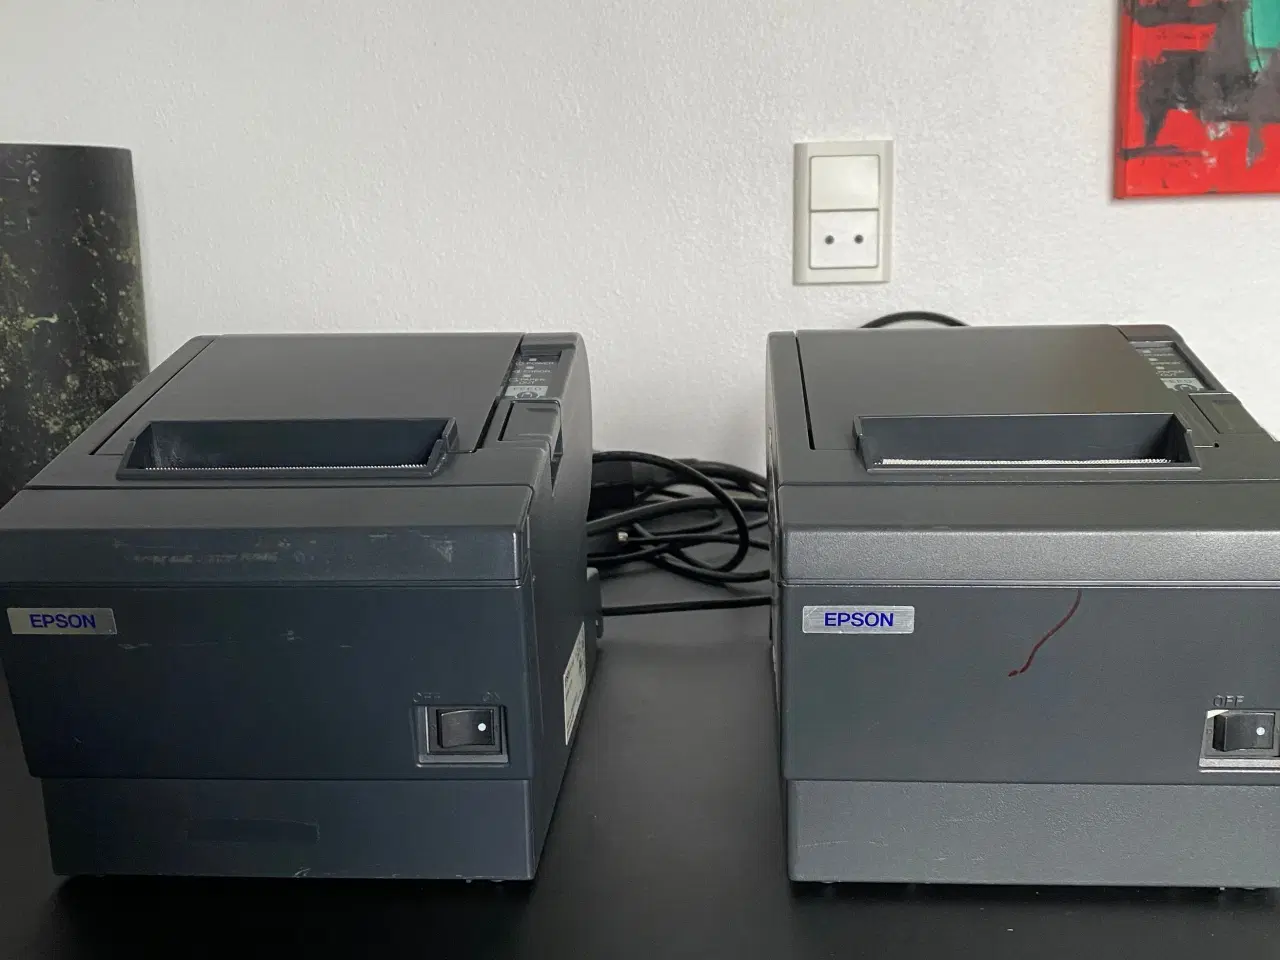 Billede 2 - Printer fra Epson model M129C